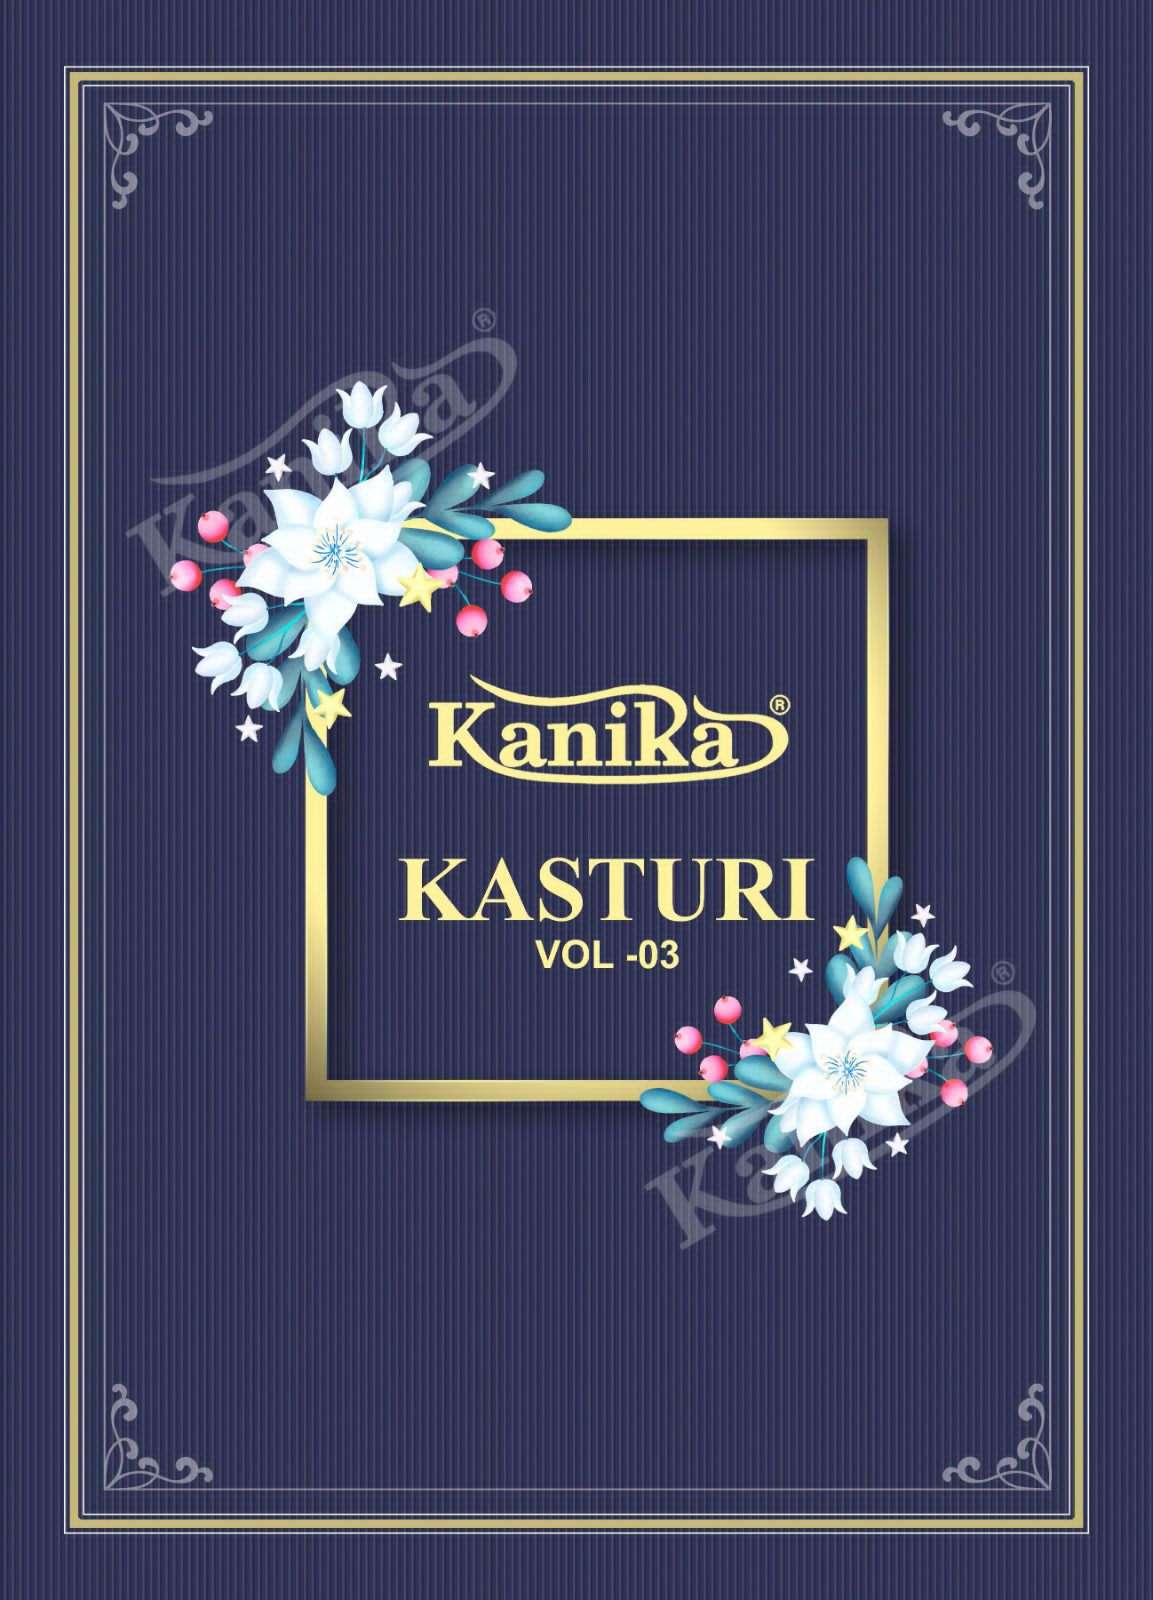 kanika kasturi vol 3 readymade patiyala style salwar kameez supplier